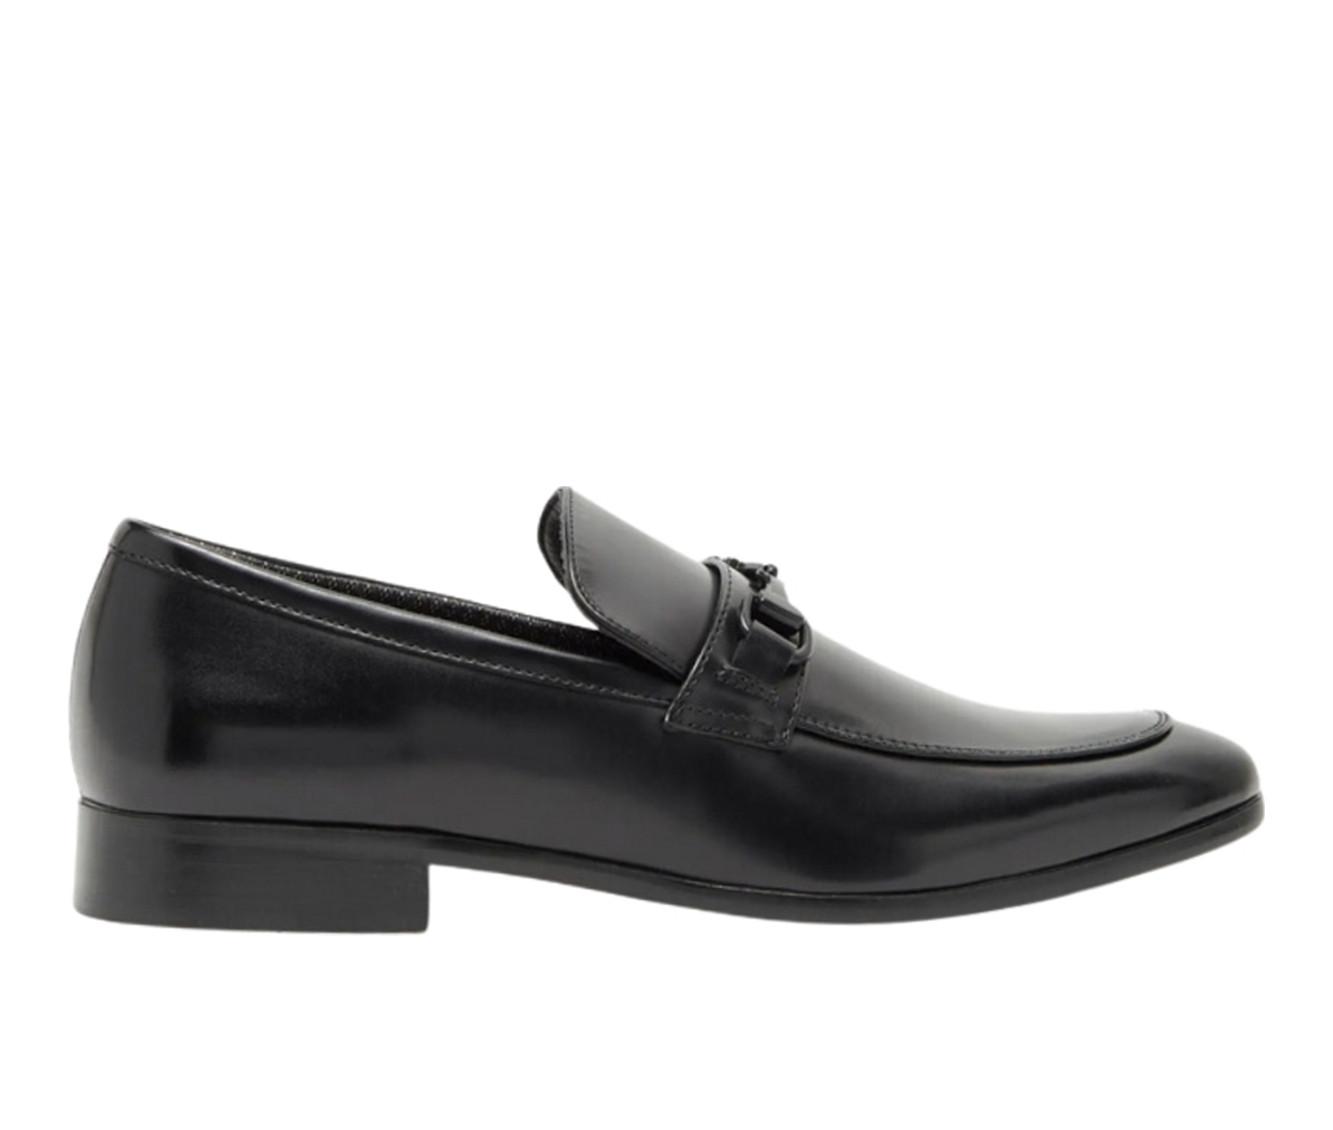 Men's RUSH Gordon Rush Slip On Bit Loafer Dress Shoes